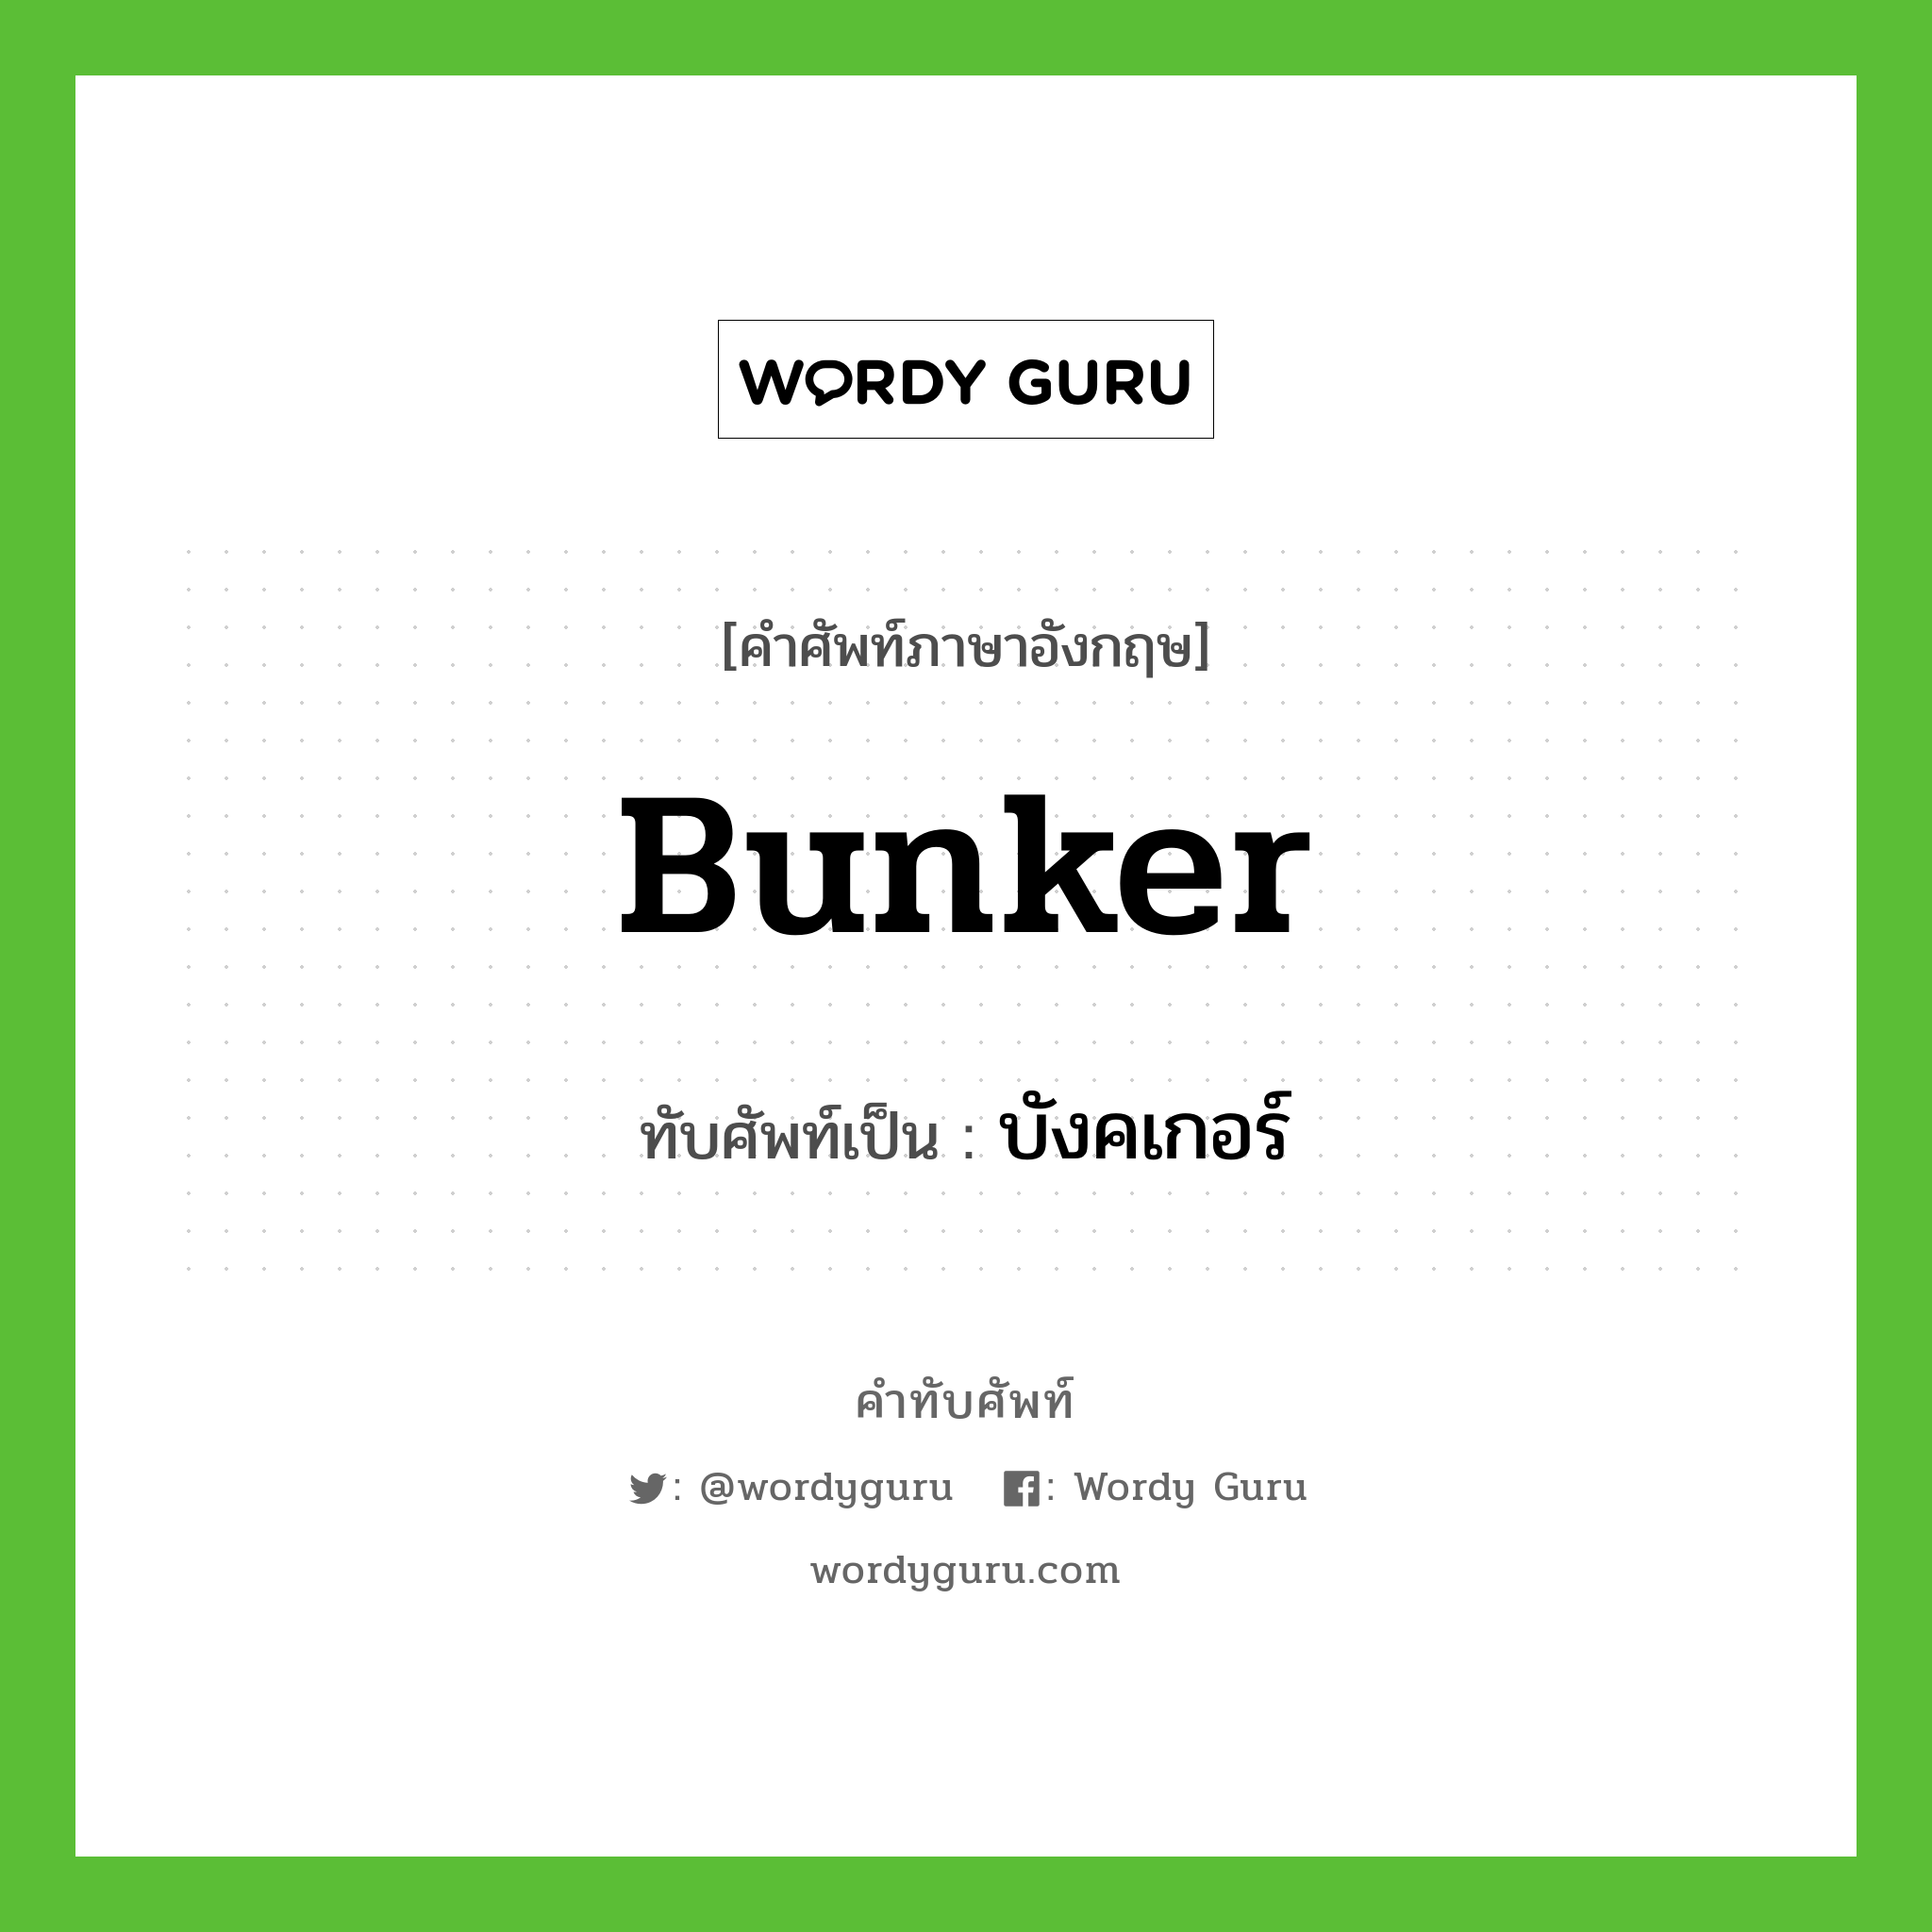 bunker เขียนเป็นคำไทยว่าอะไร?, คำศัพท์ภาษาอังกฤษ bunker ทับศัพท์เป็น บังคเกอร์